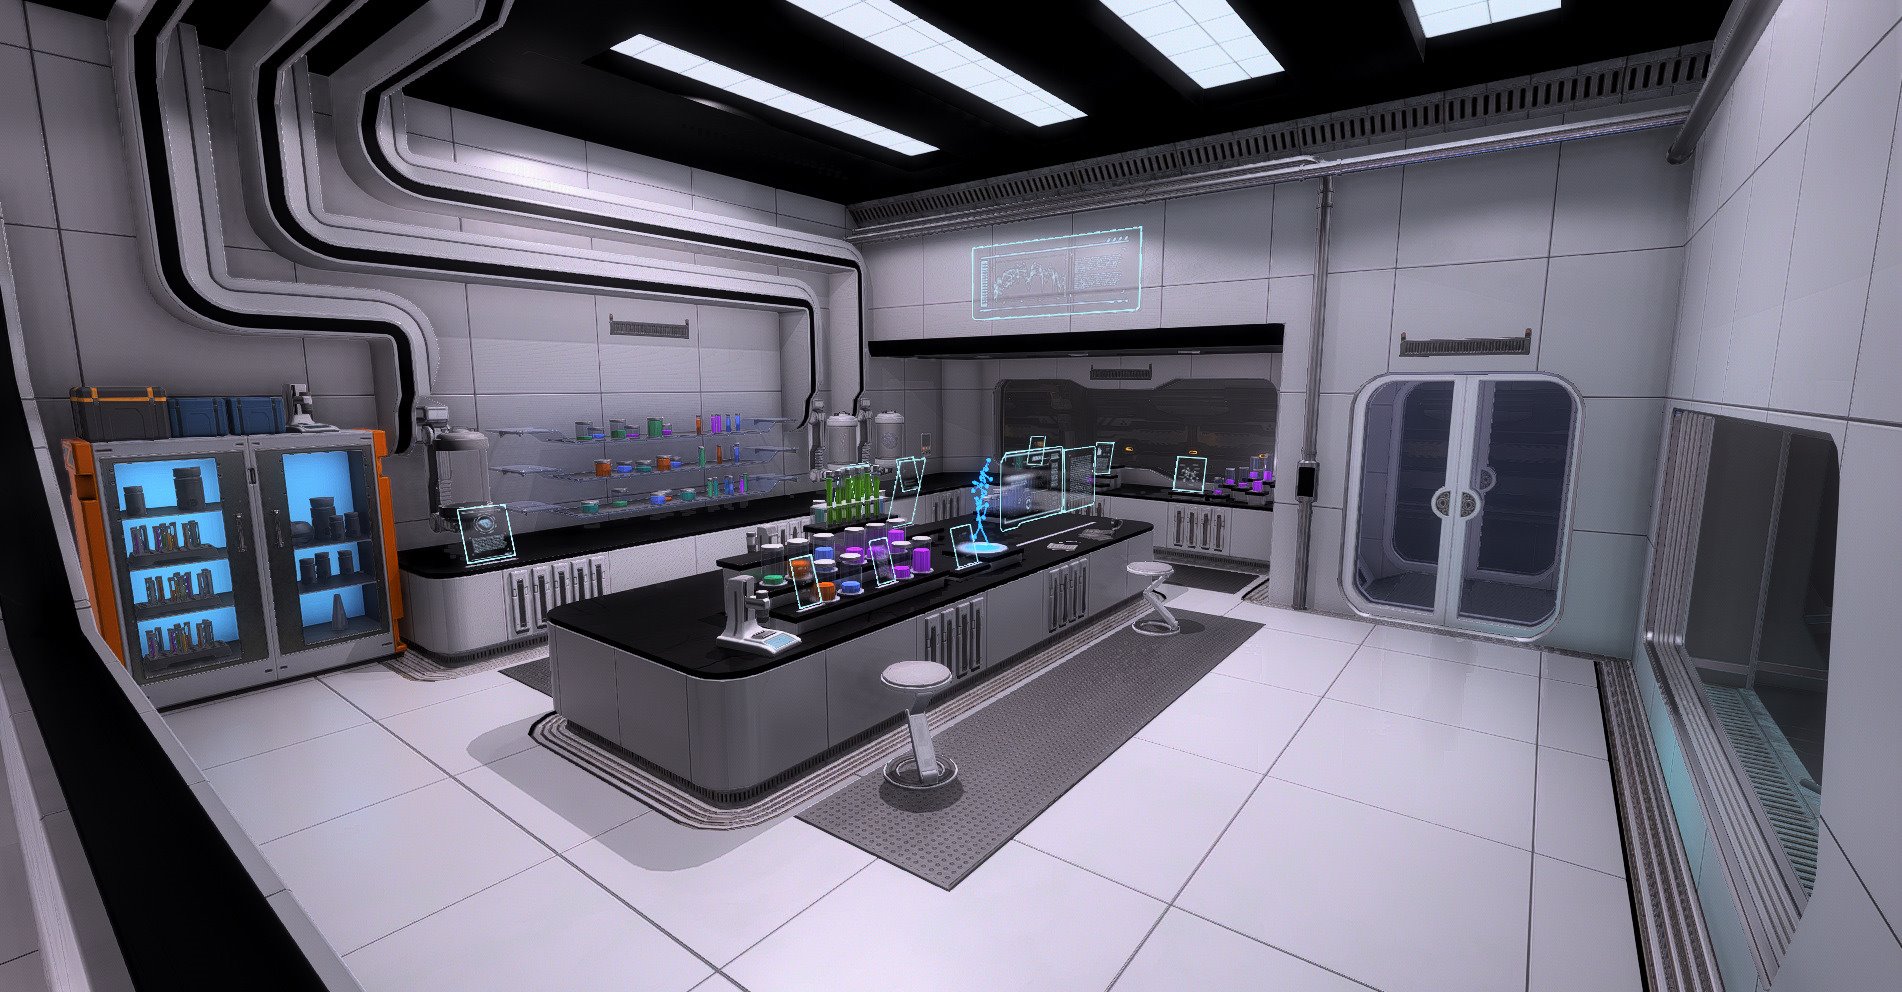 Sci fi games. Sci Fi кухня. Кухня в стиле космического корабля. Интерьер космической станции. Кухня на космическом корабле.